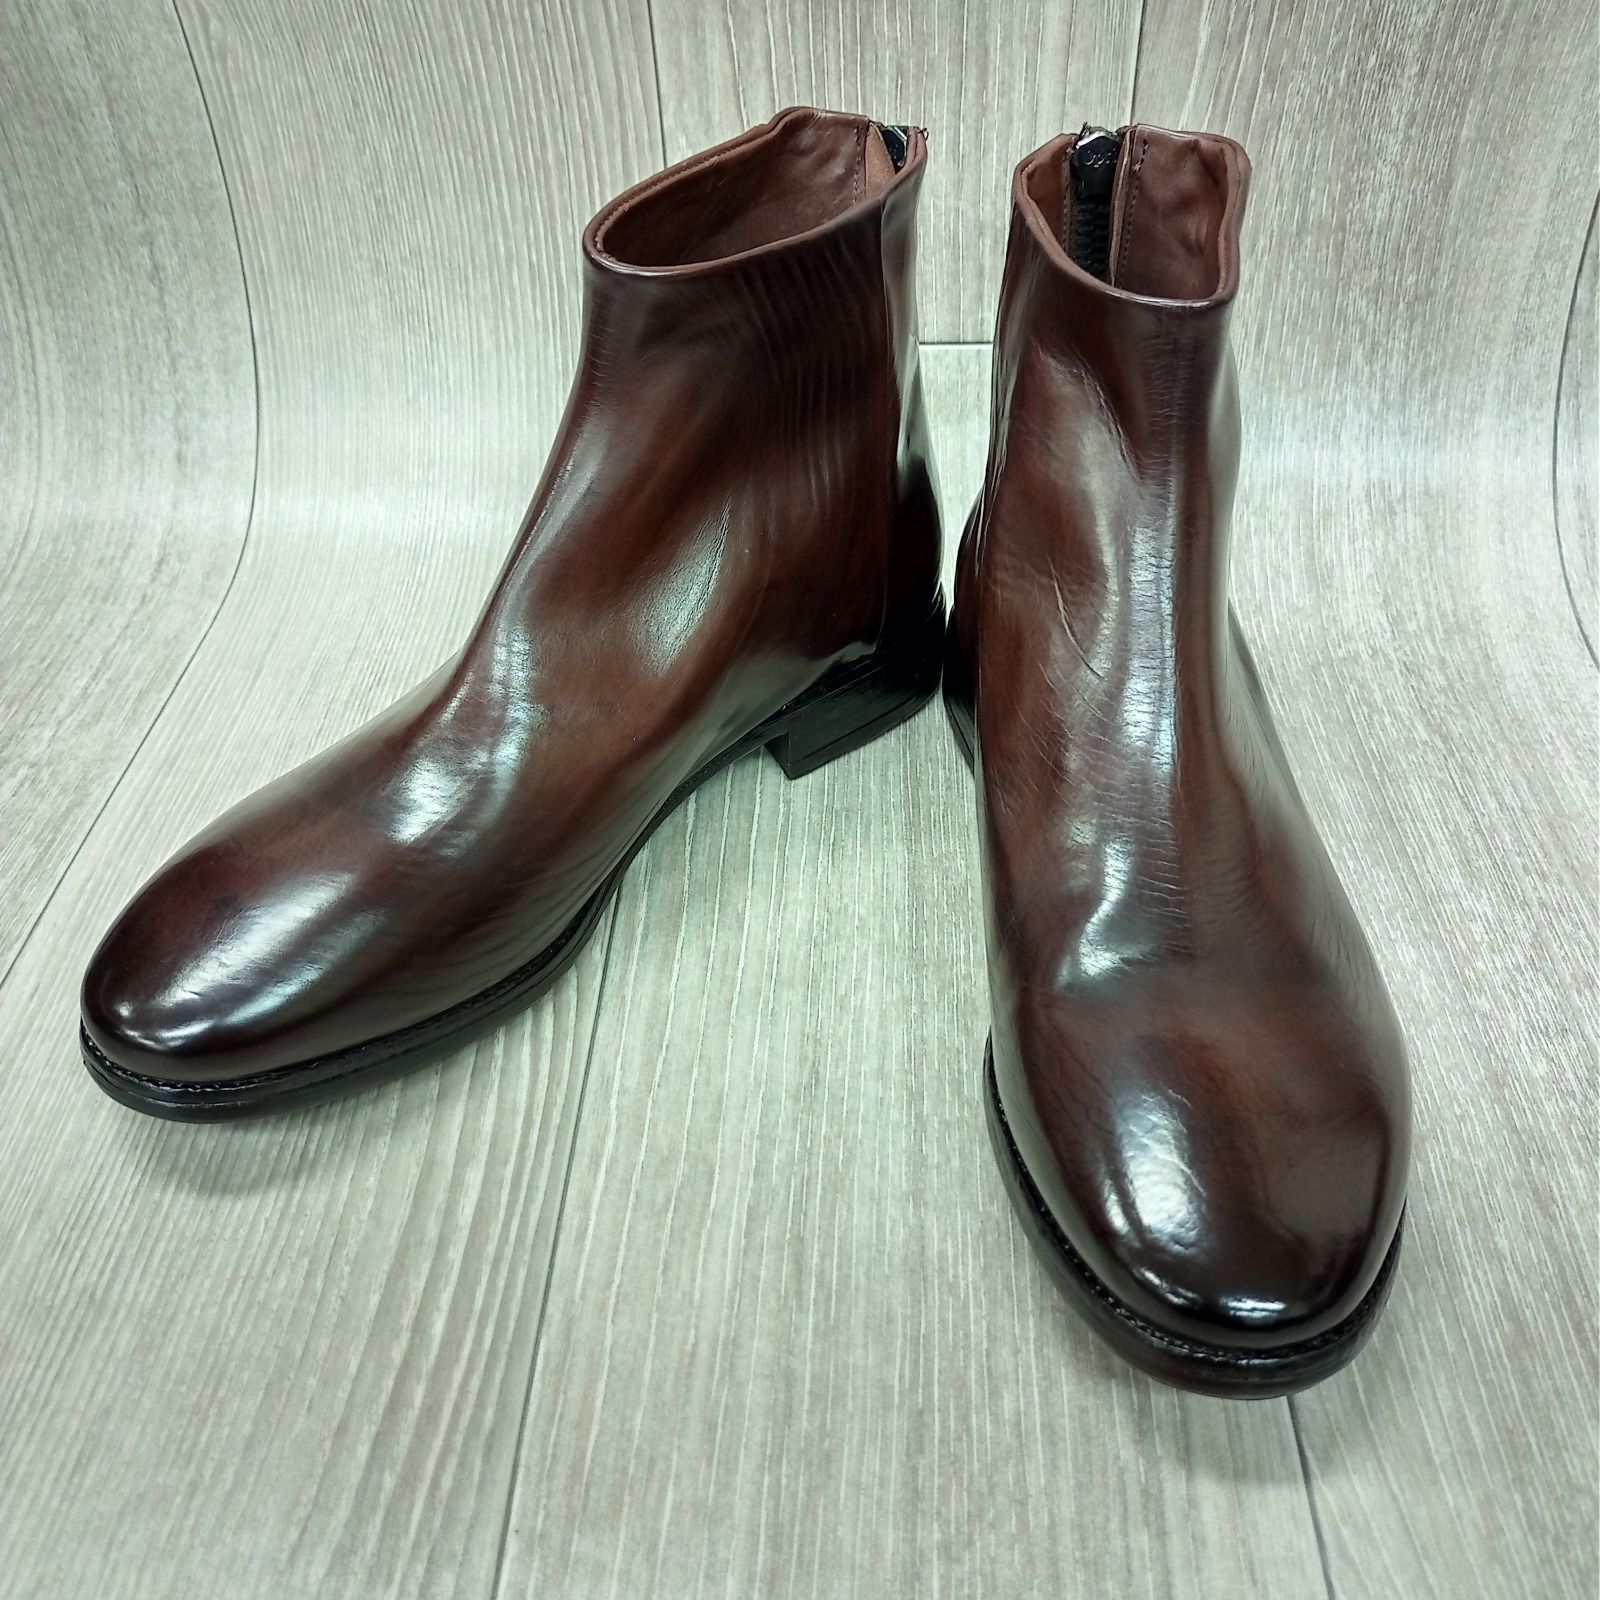 PAKROS◆バックジップブーツ◆サイズ41(25.5cm)◆ダークブラウン◆紳士革靴イタリア製